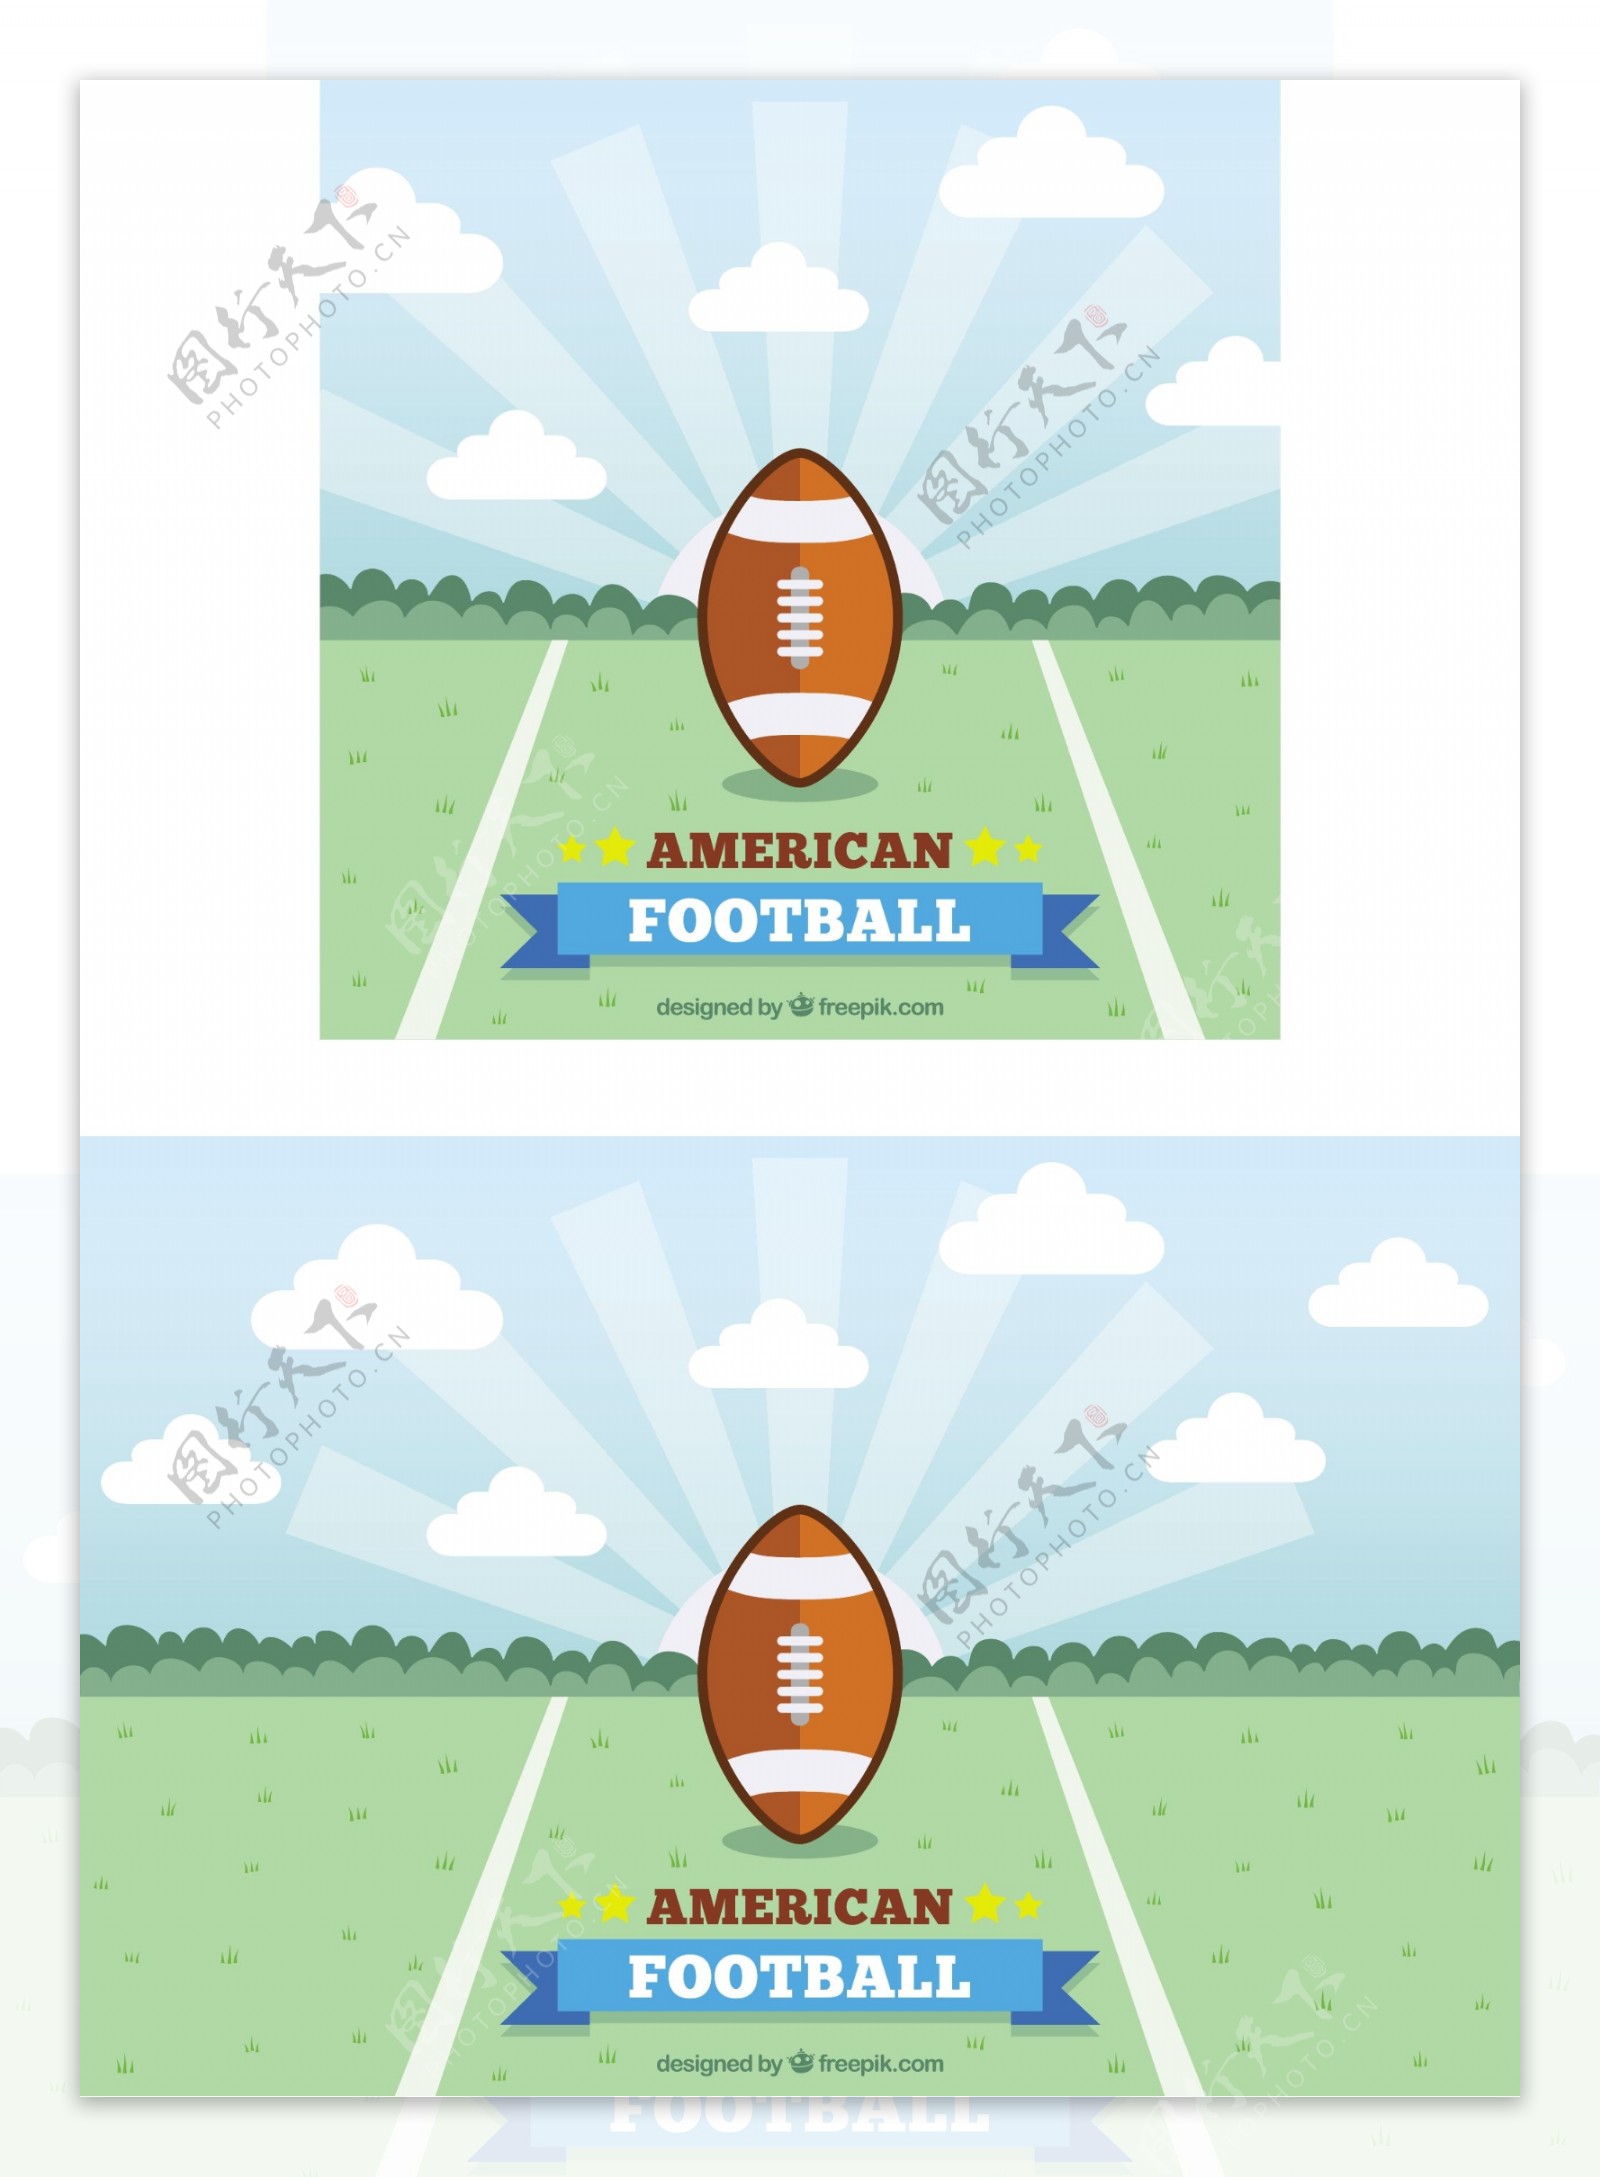 美式足球在平面设计中的应用背景